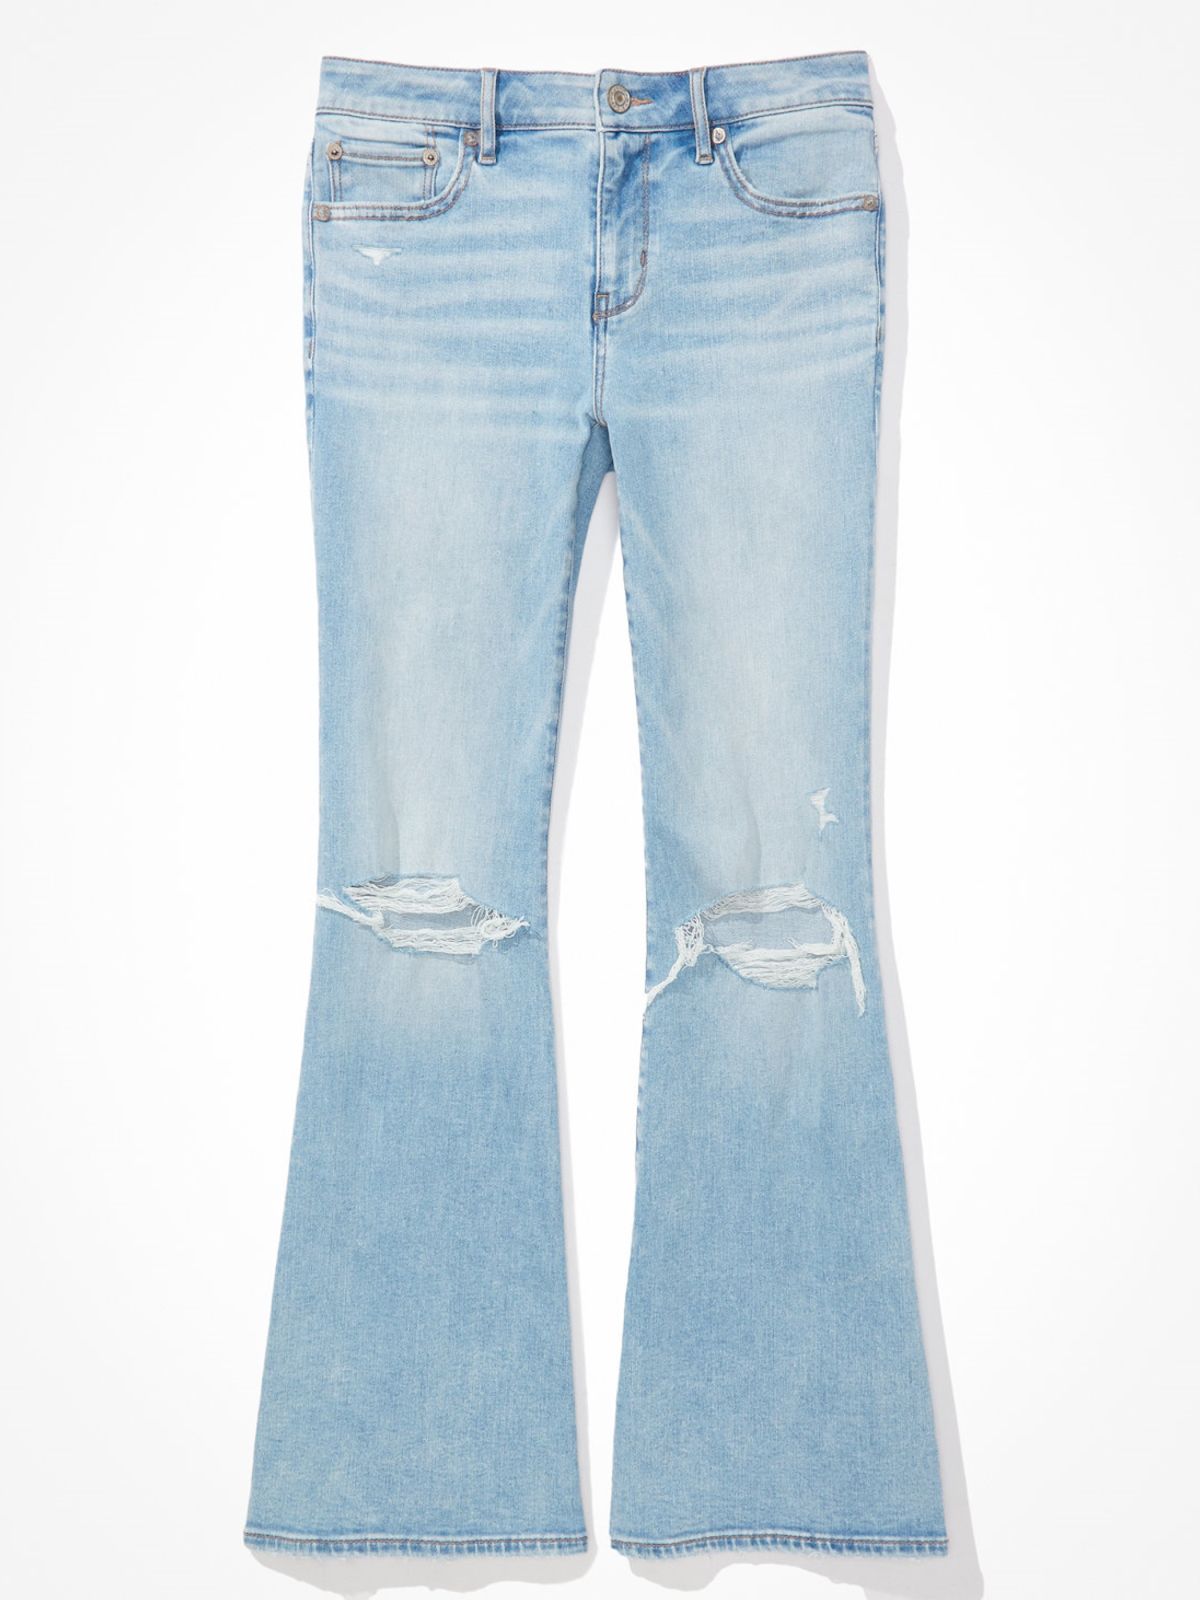  ג'ינס ארוך עם קרע בגזרת FLARE / נשים של AMERICAN EAGLE